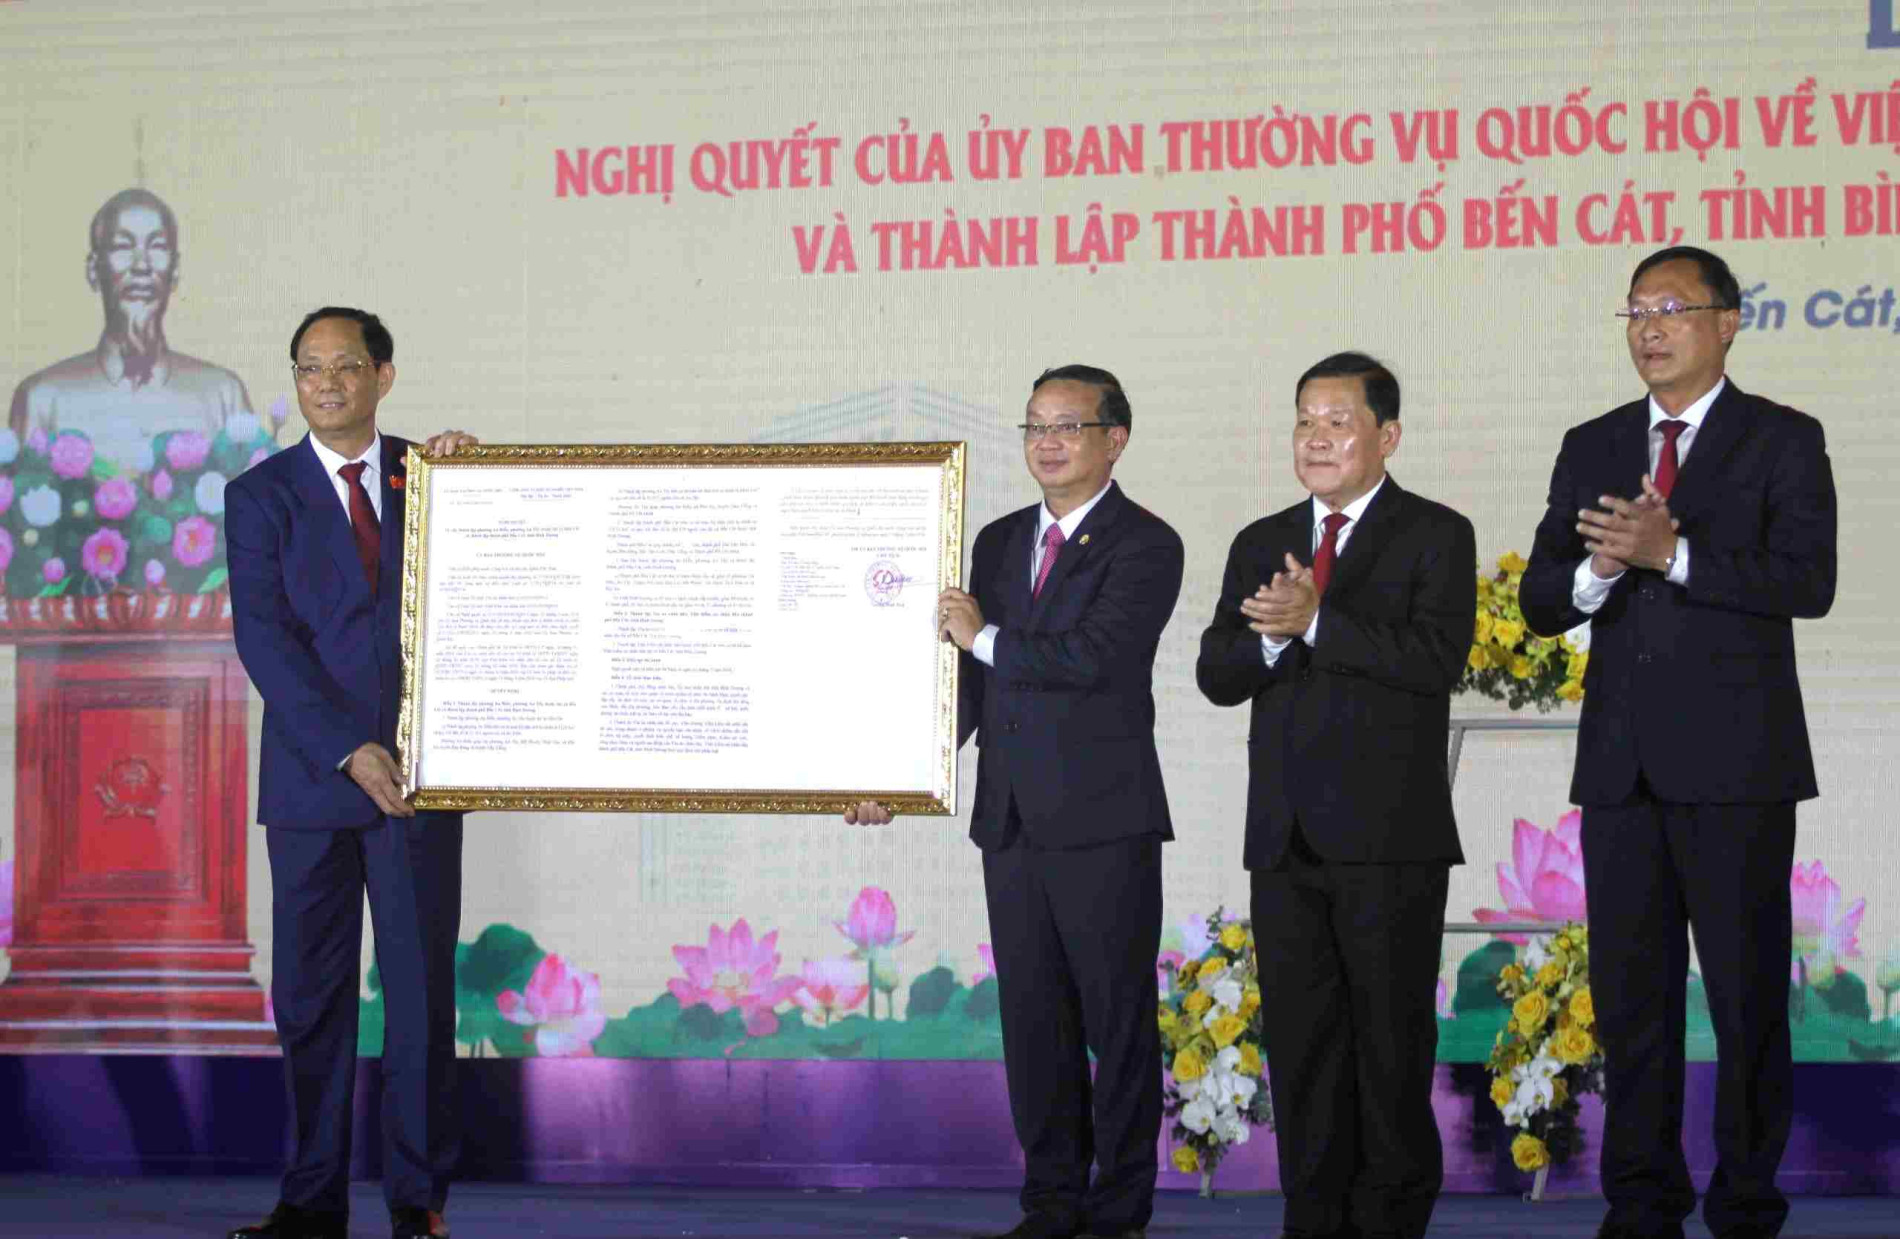 Thượng tướng Trần Quang Phương - Phó Chủ tịch Quốc Hội đã công bố Nghị quyết thành lập thành phố Bến Cát.